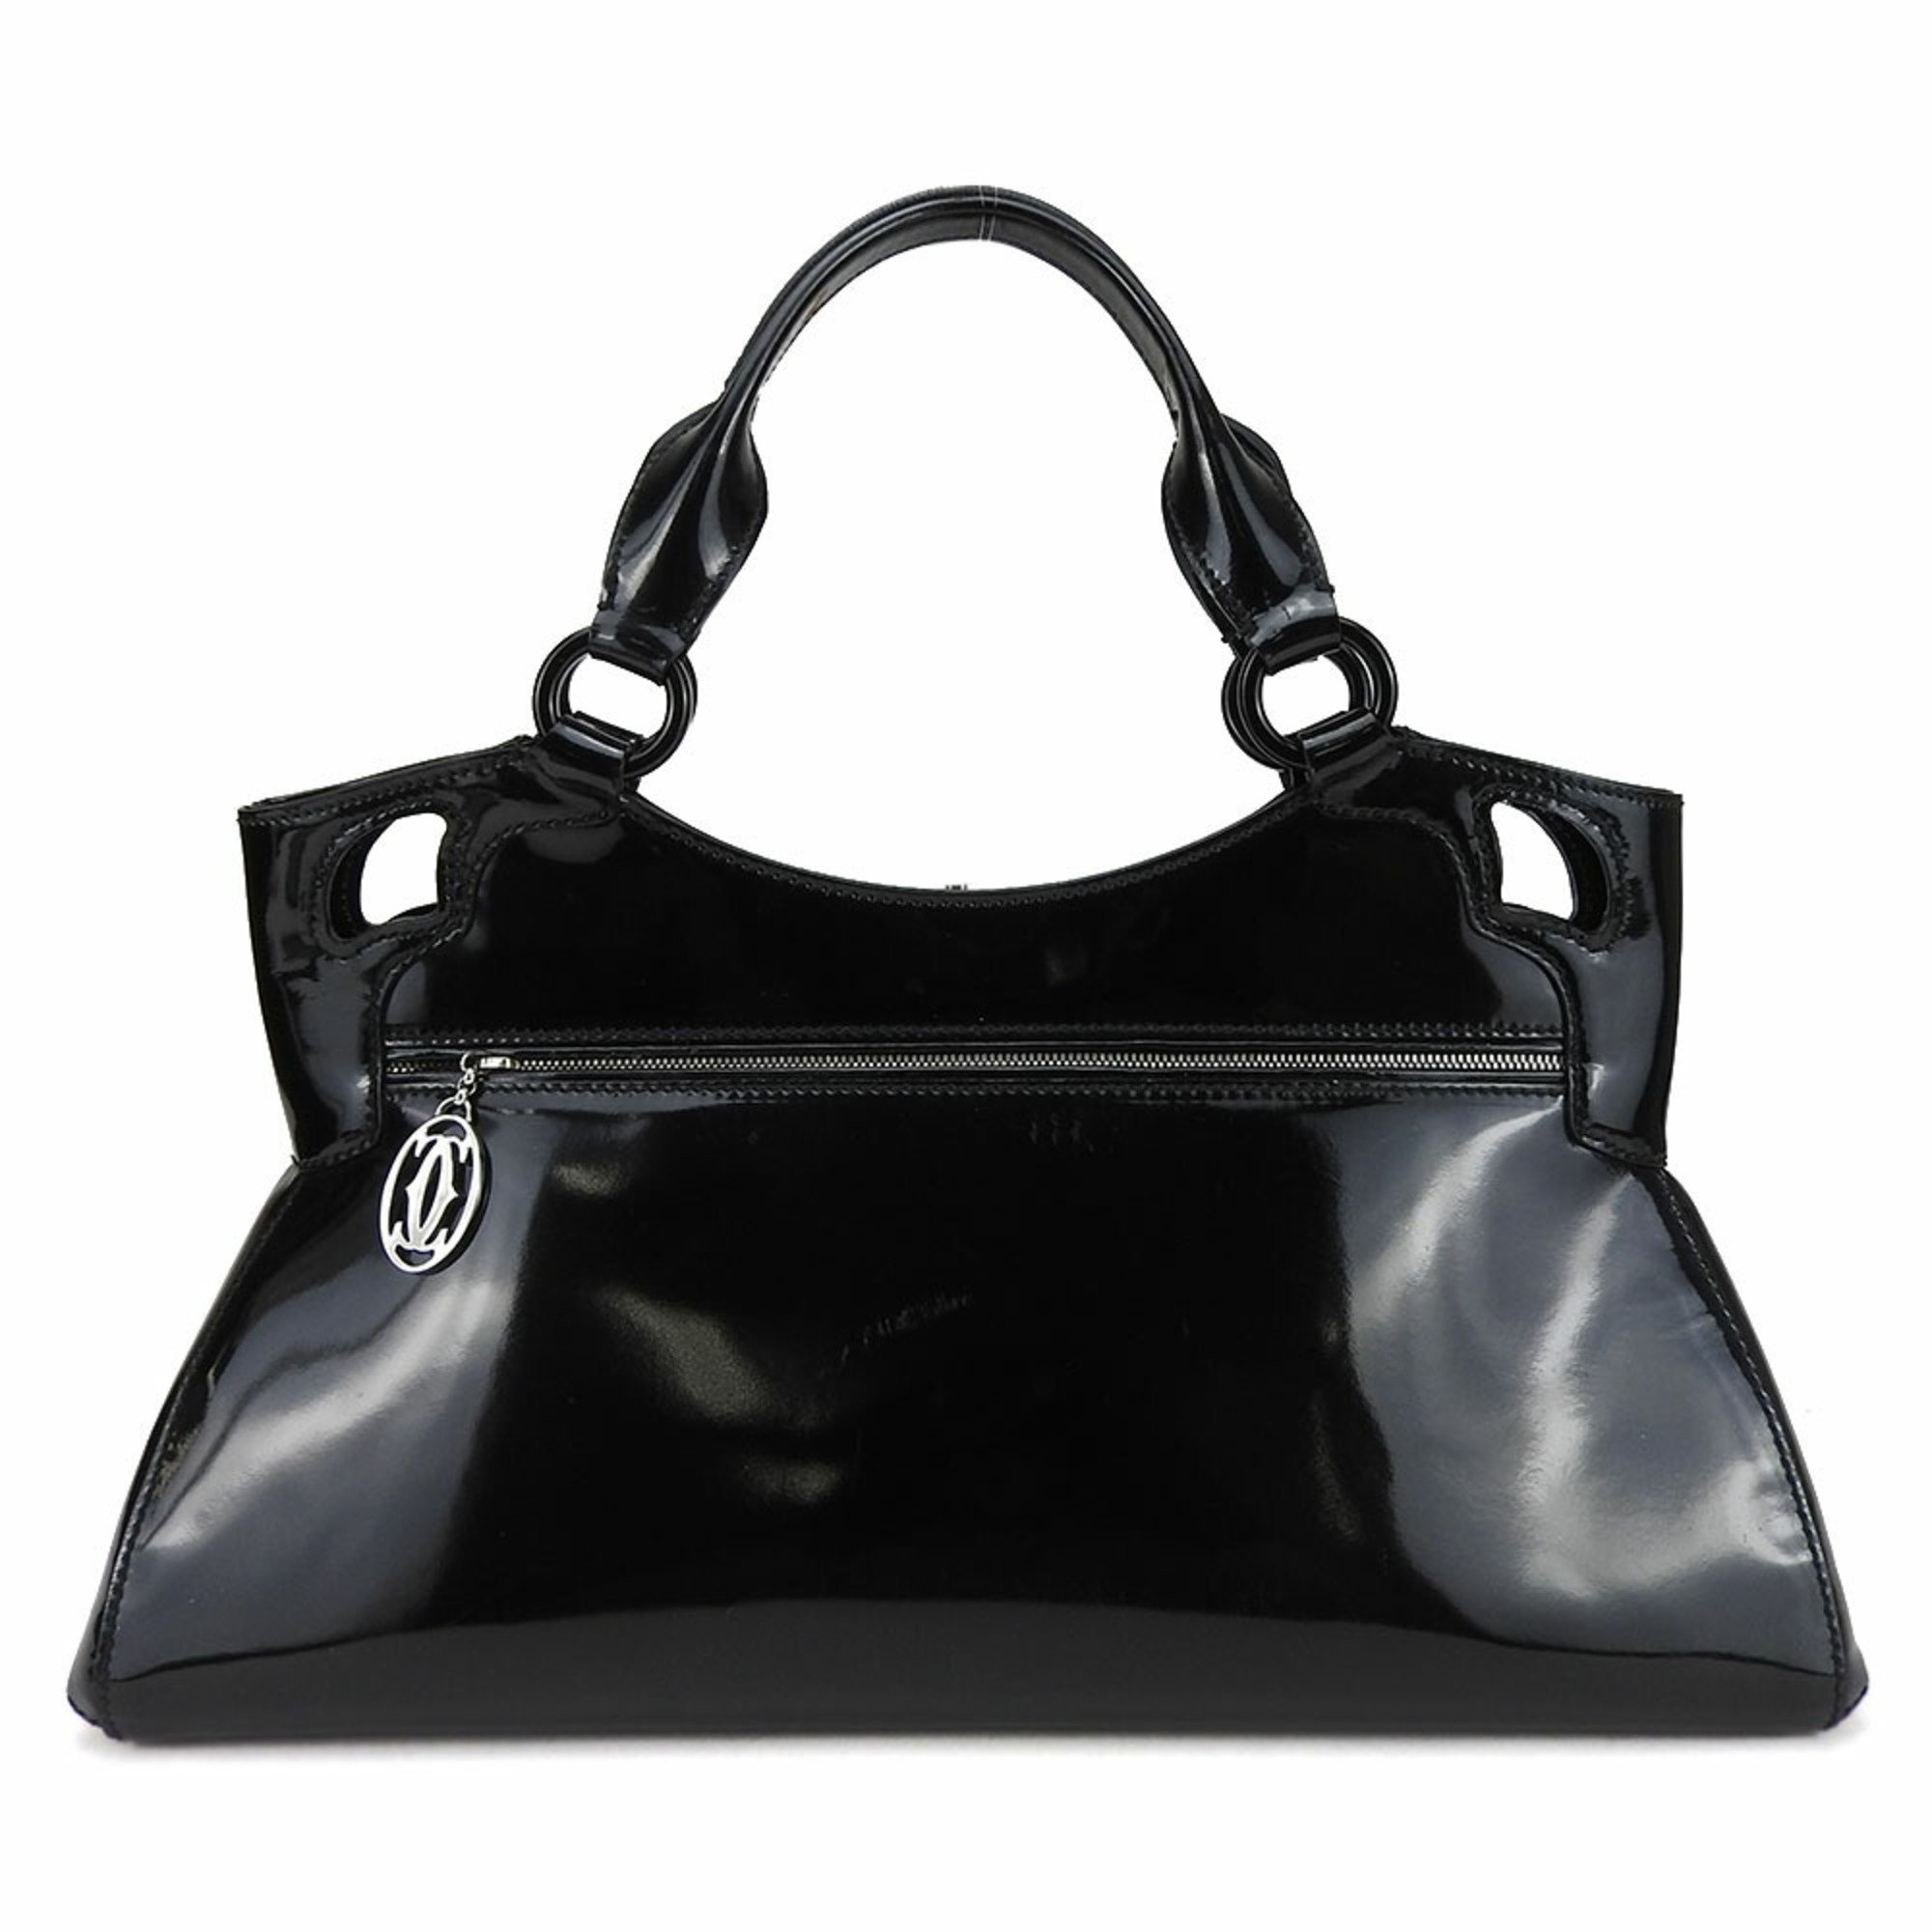 Black Leather Handbag by Famous Designer